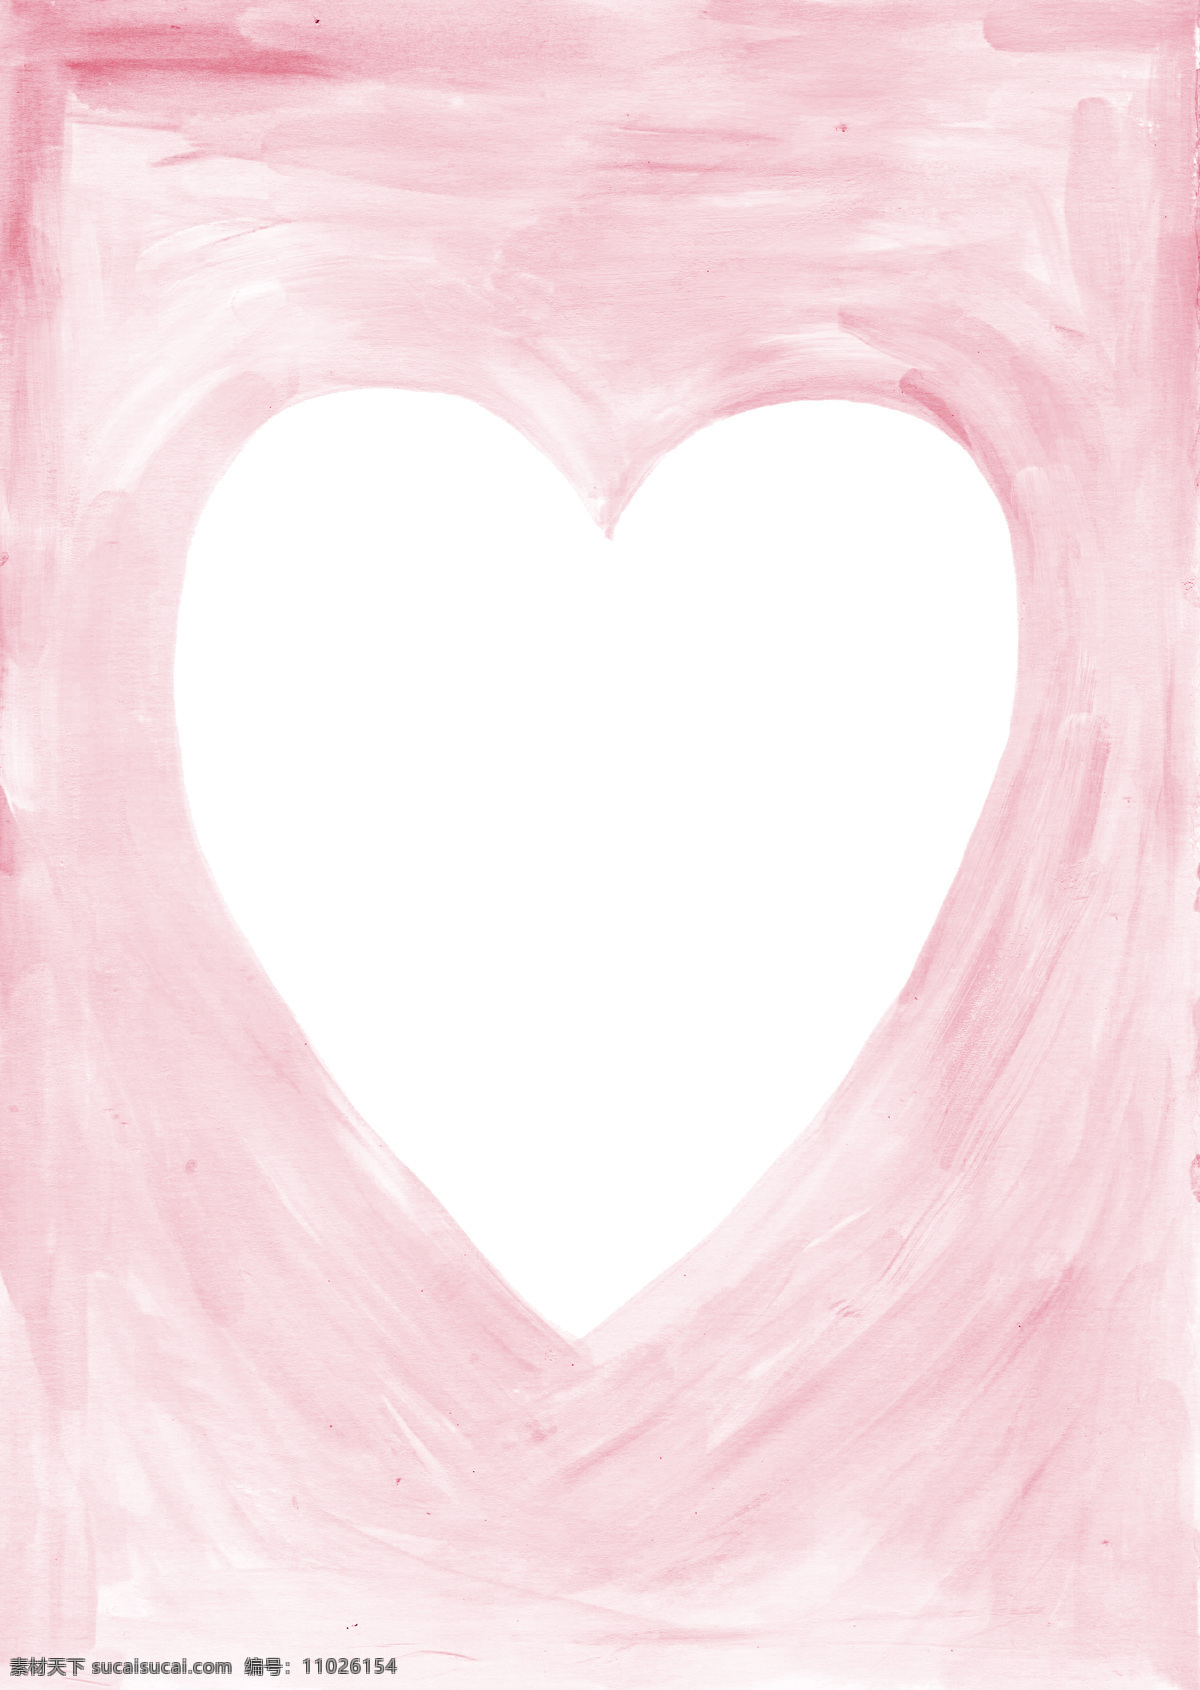 粉红色 水彩 底纹 背景 渐变 白色 爱心 舒服 素雅 背景素材